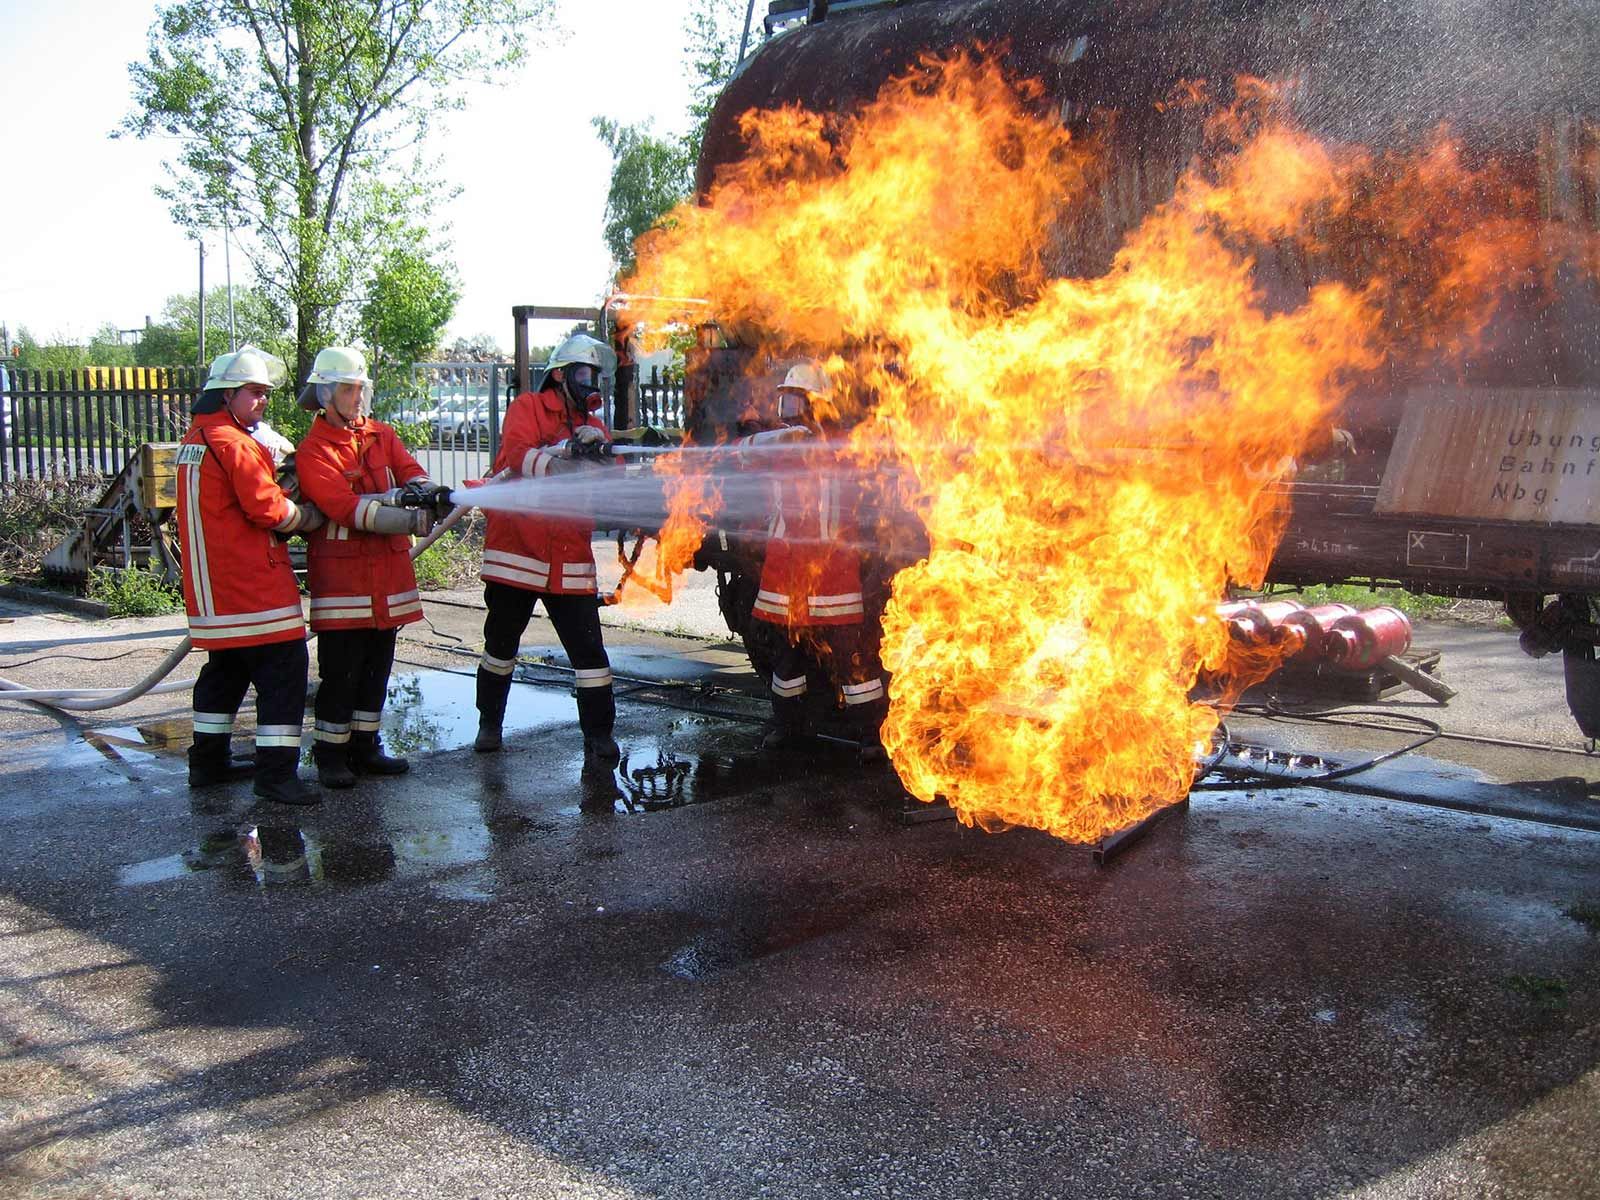 HeatWave Fire Training Systems in Waldshut-Tiengen